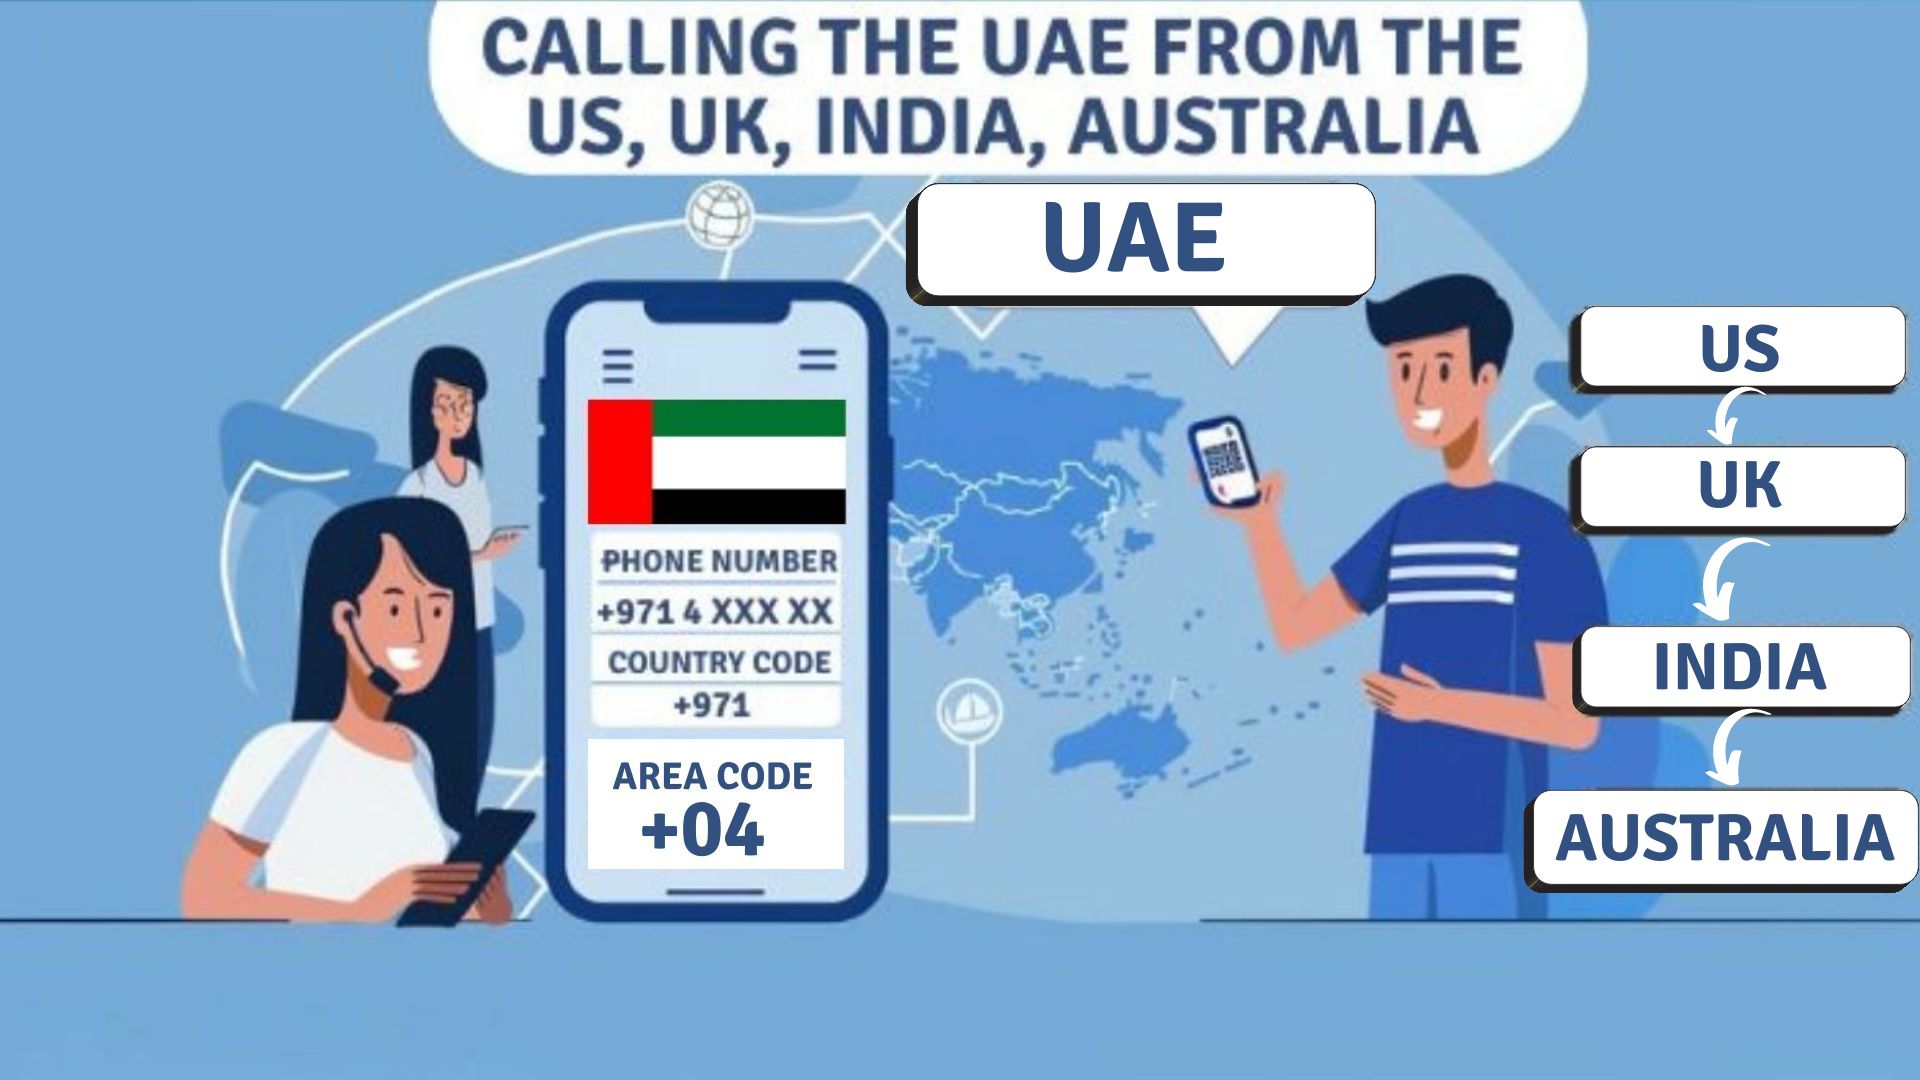 Calling the UAE from the US, UK, India, Australia